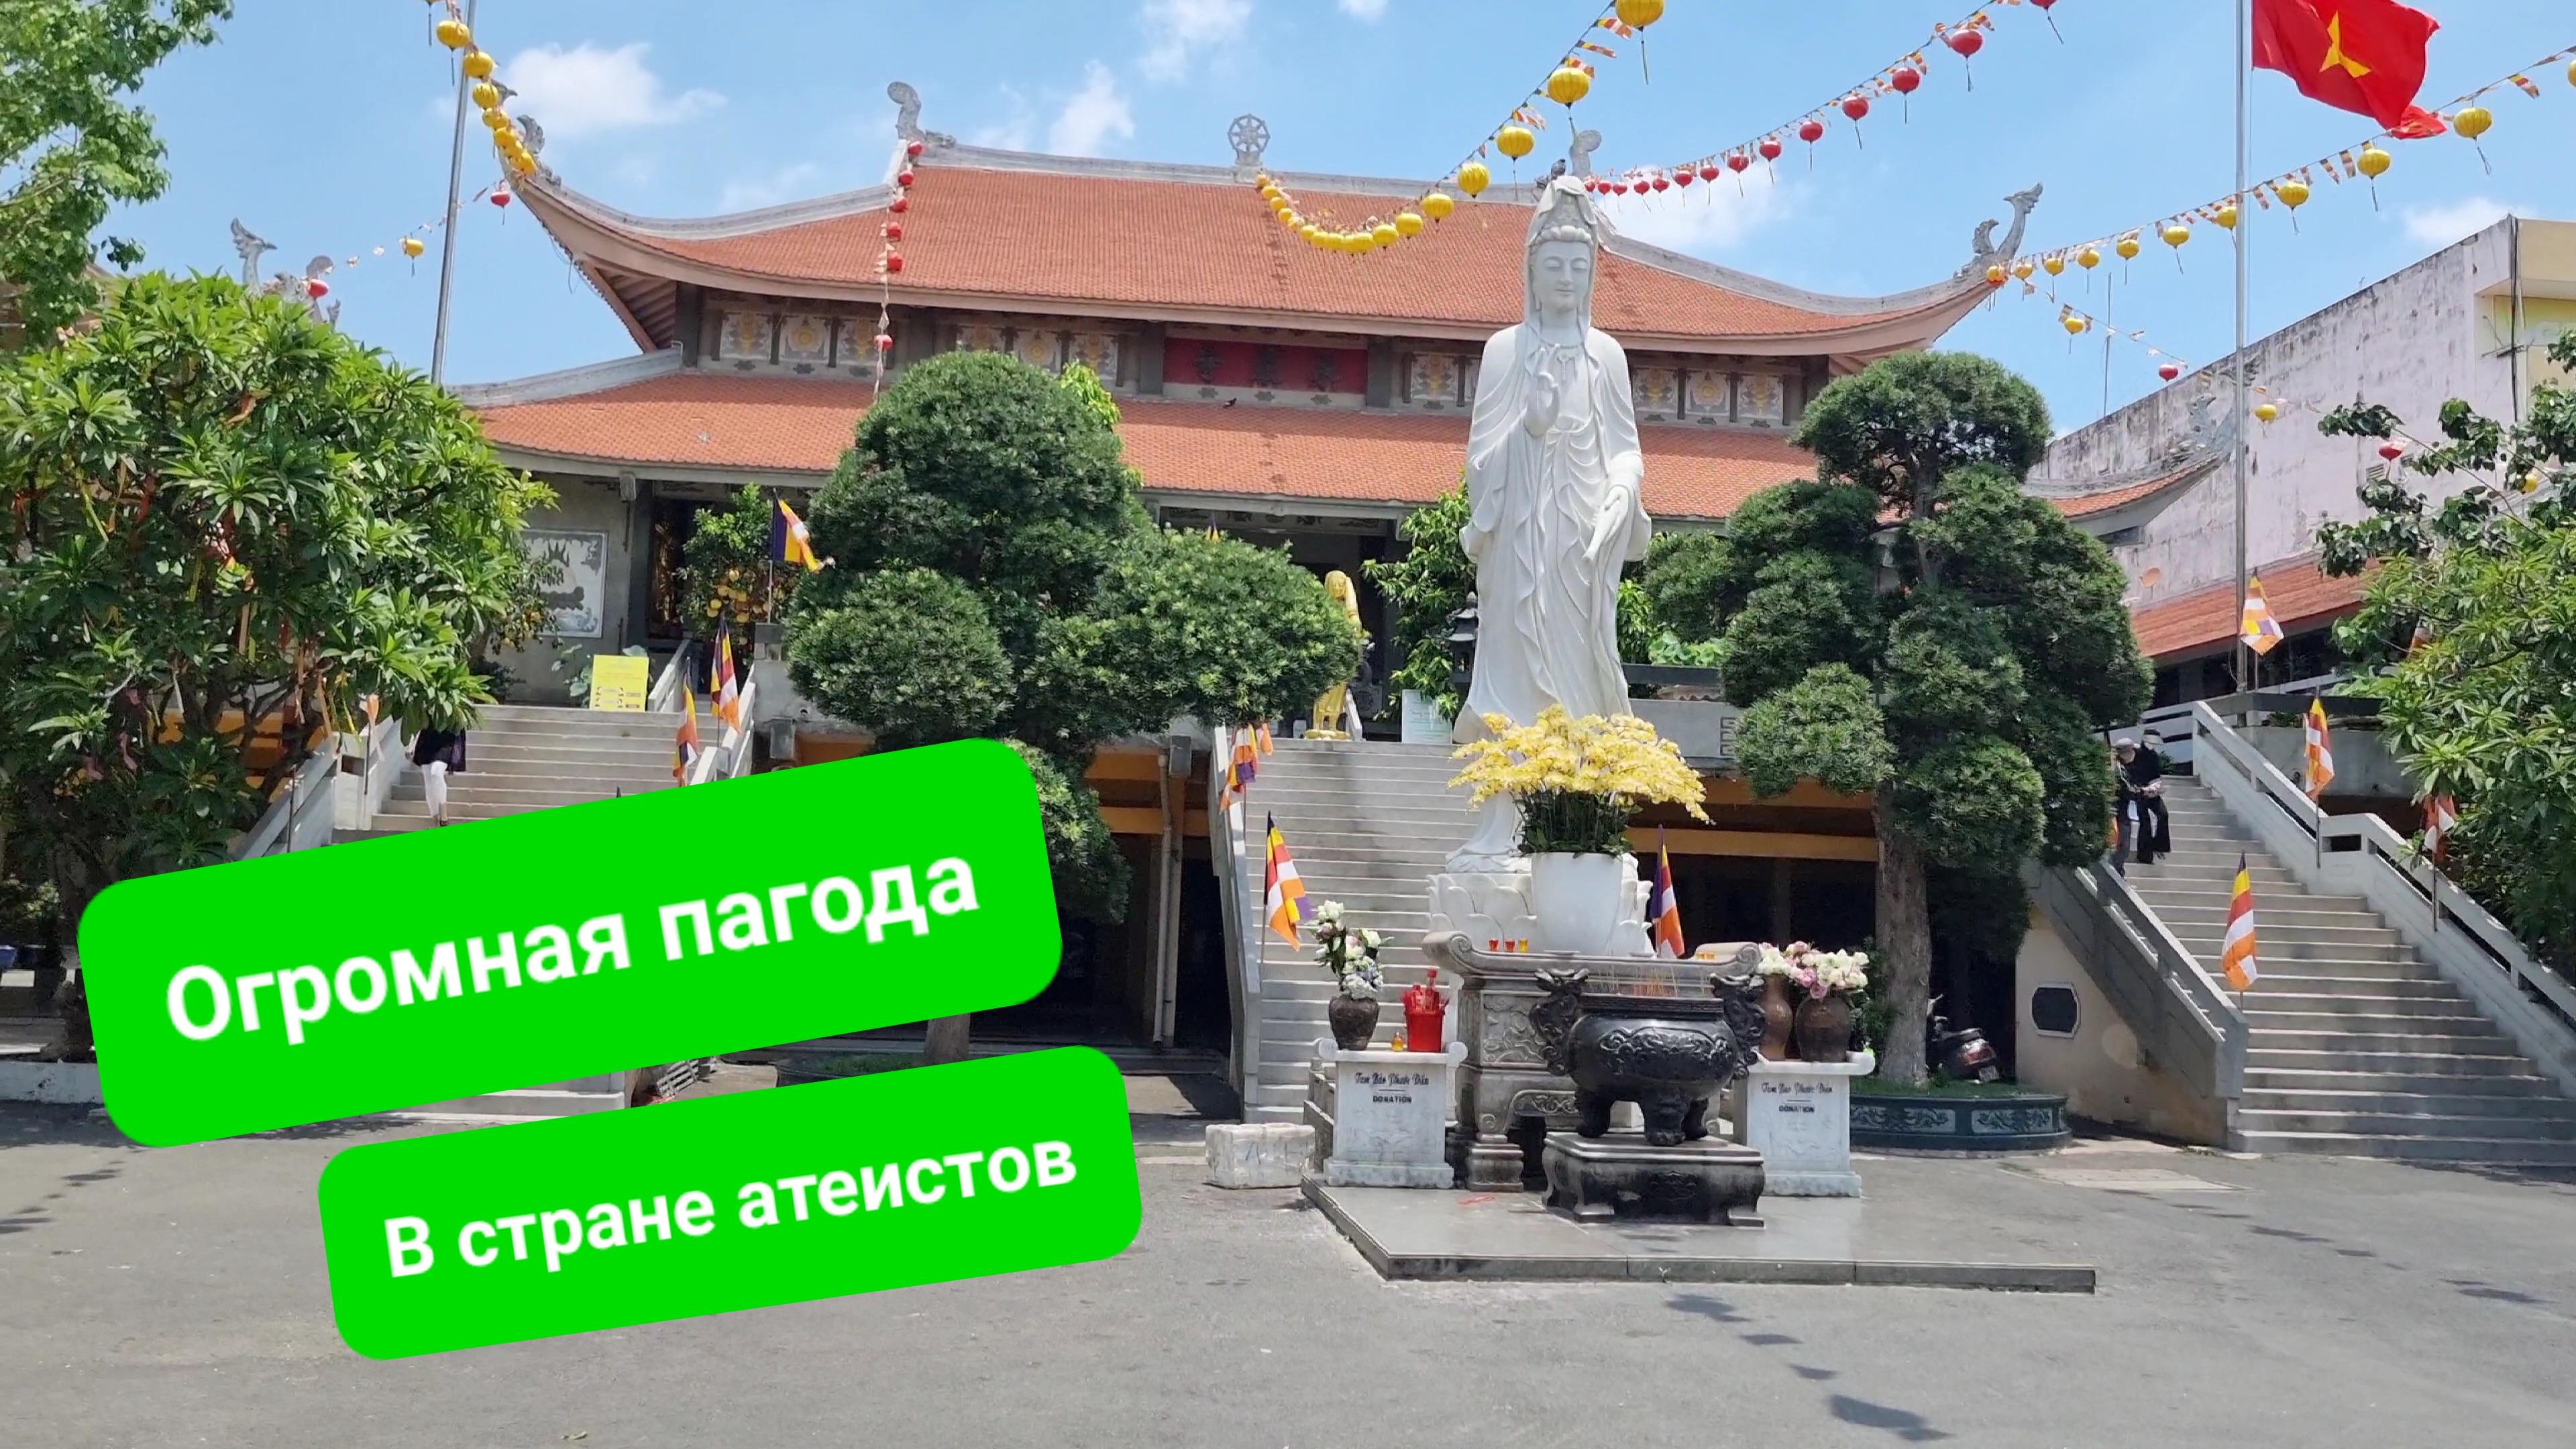 Крупнейший буддийский храм Вьетнама. Как буддизм уживается с социализмом? Сколько верующих в стране?